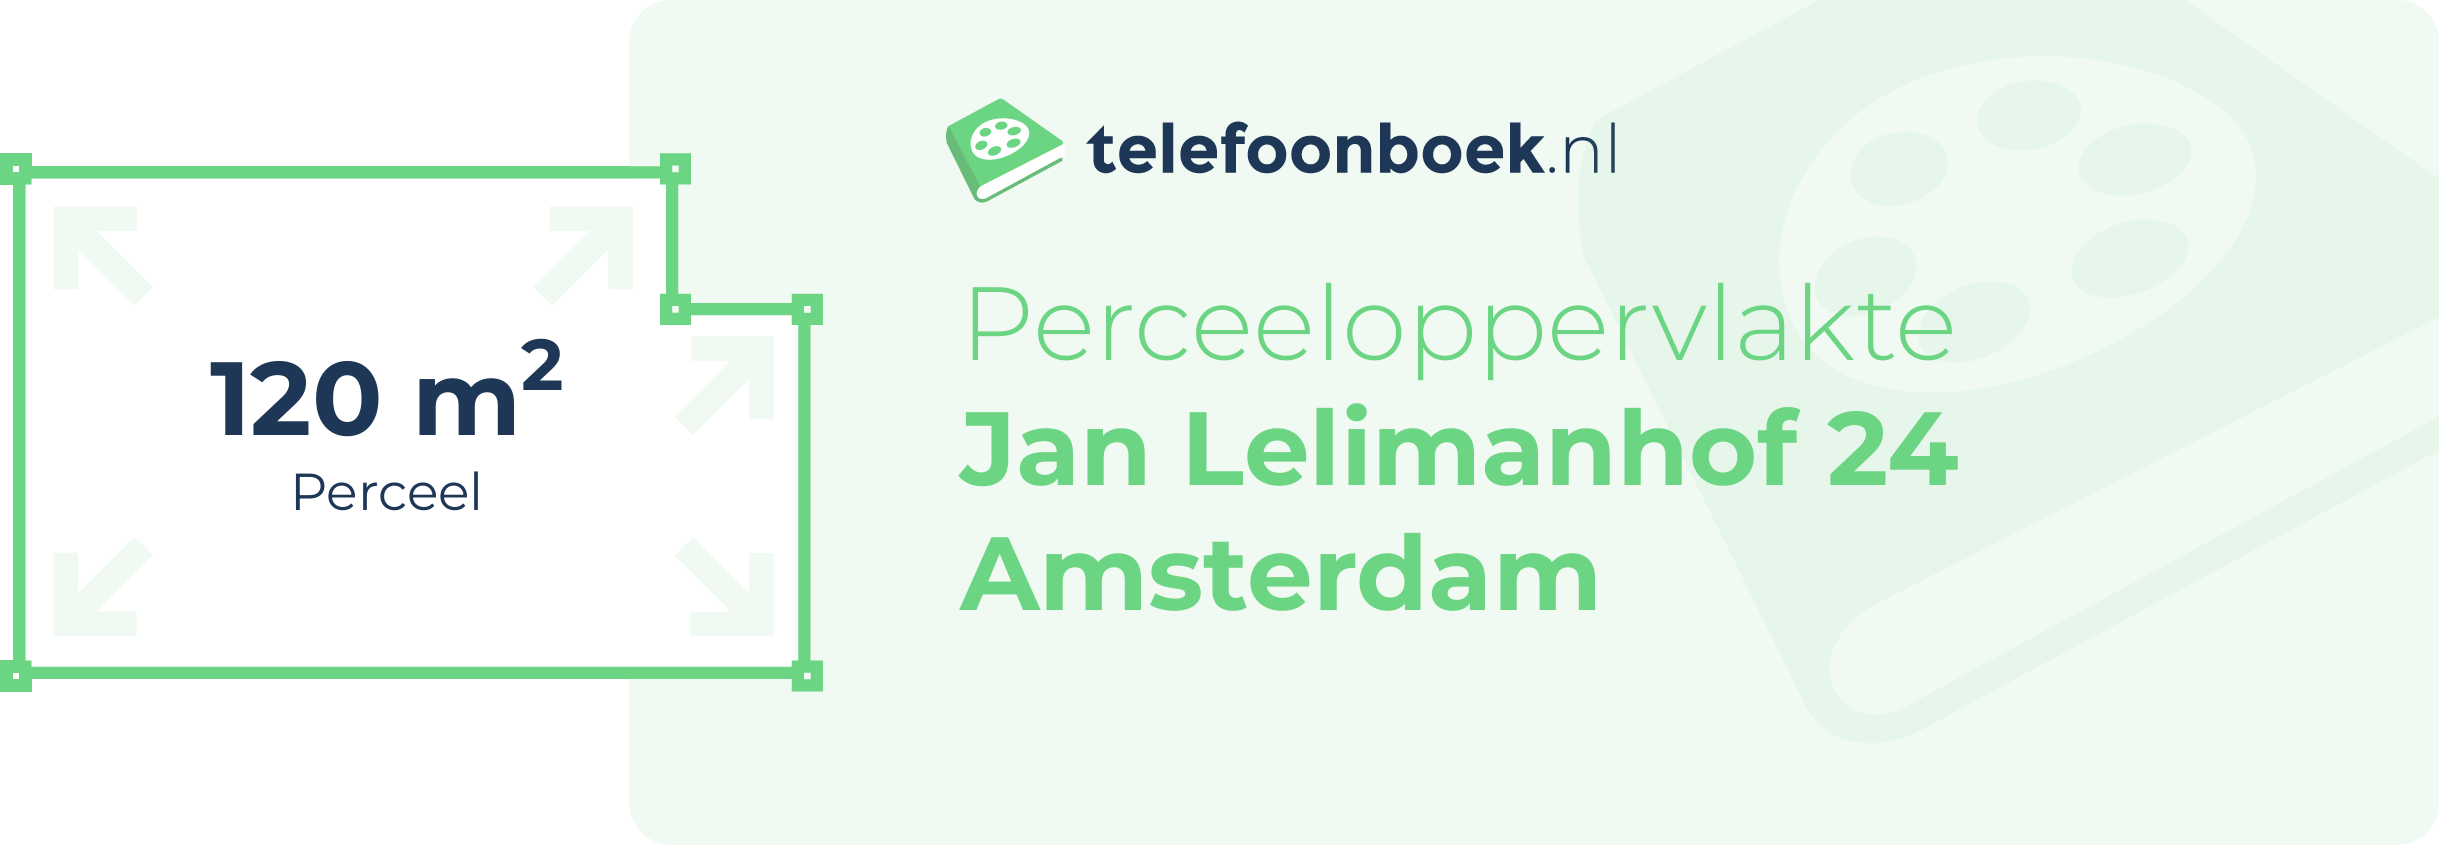 Perceeloppervlakte Jan Lelimanhof 24 Amsterdam